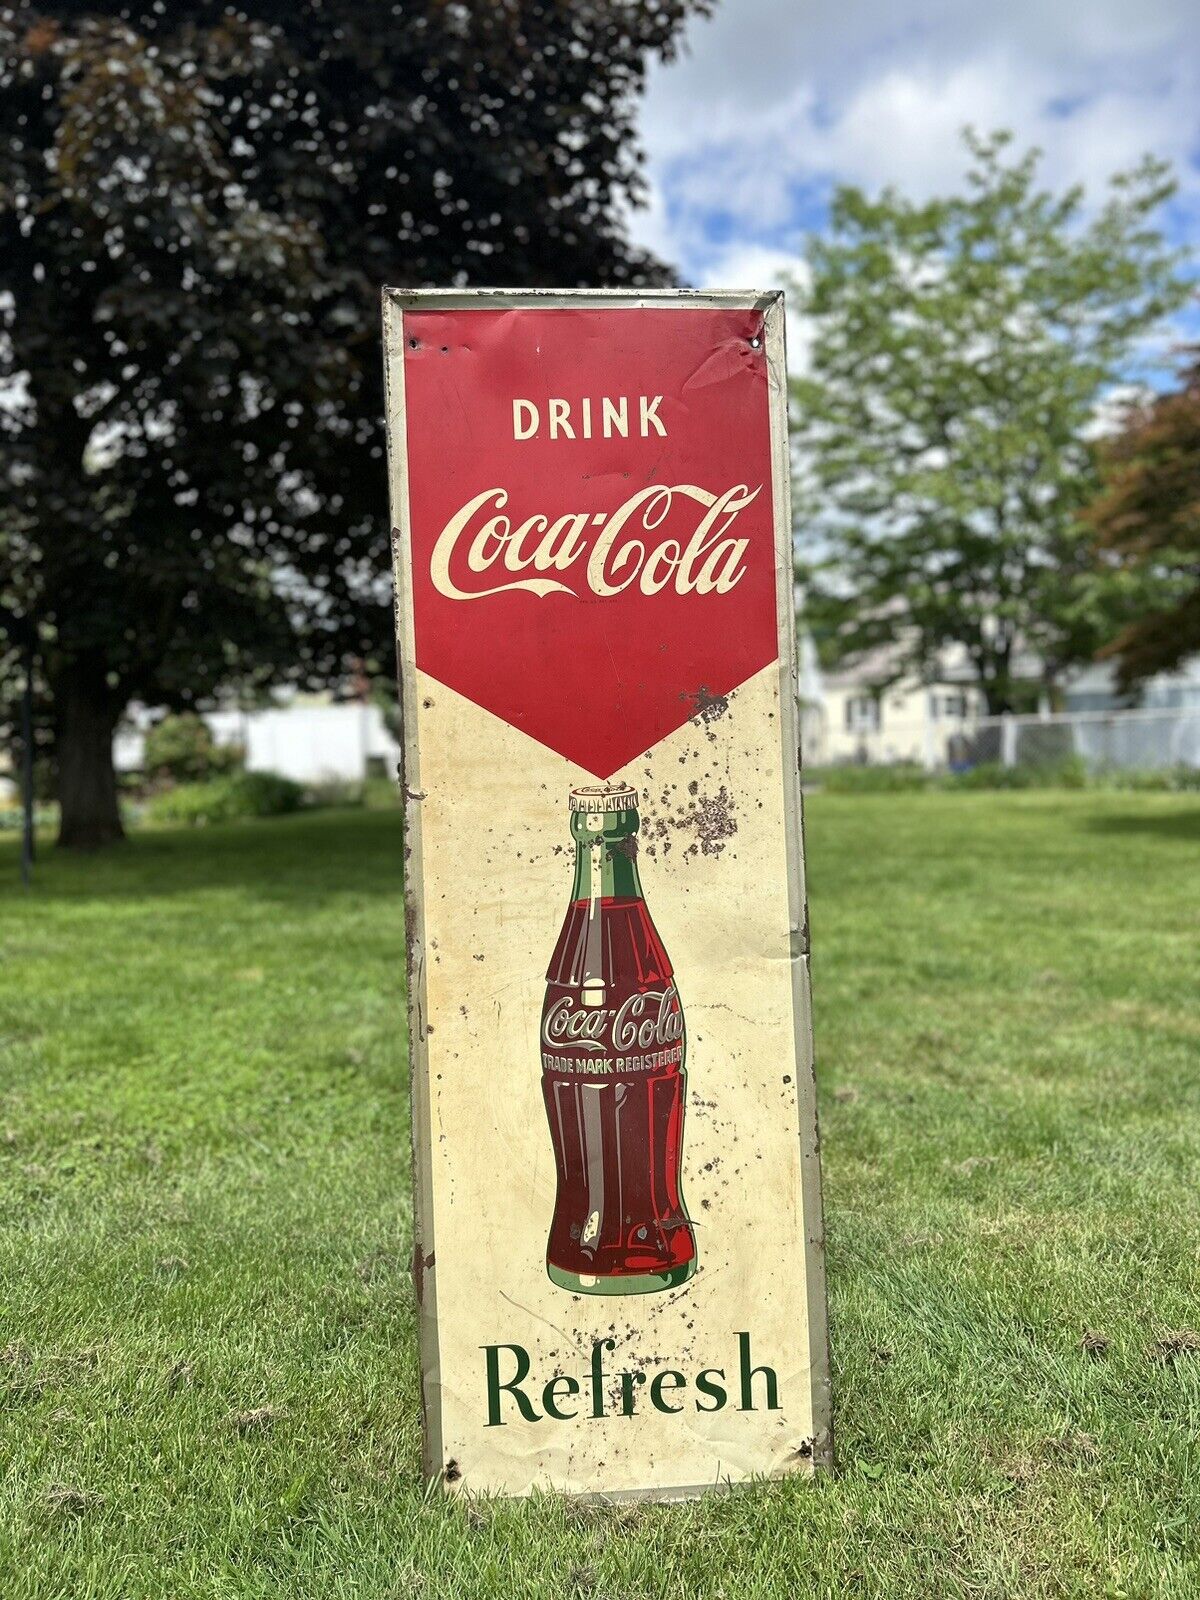 1948 Original Vintage Drink Coca Cola Metal Sign Bottle Refresh Robertson Coke